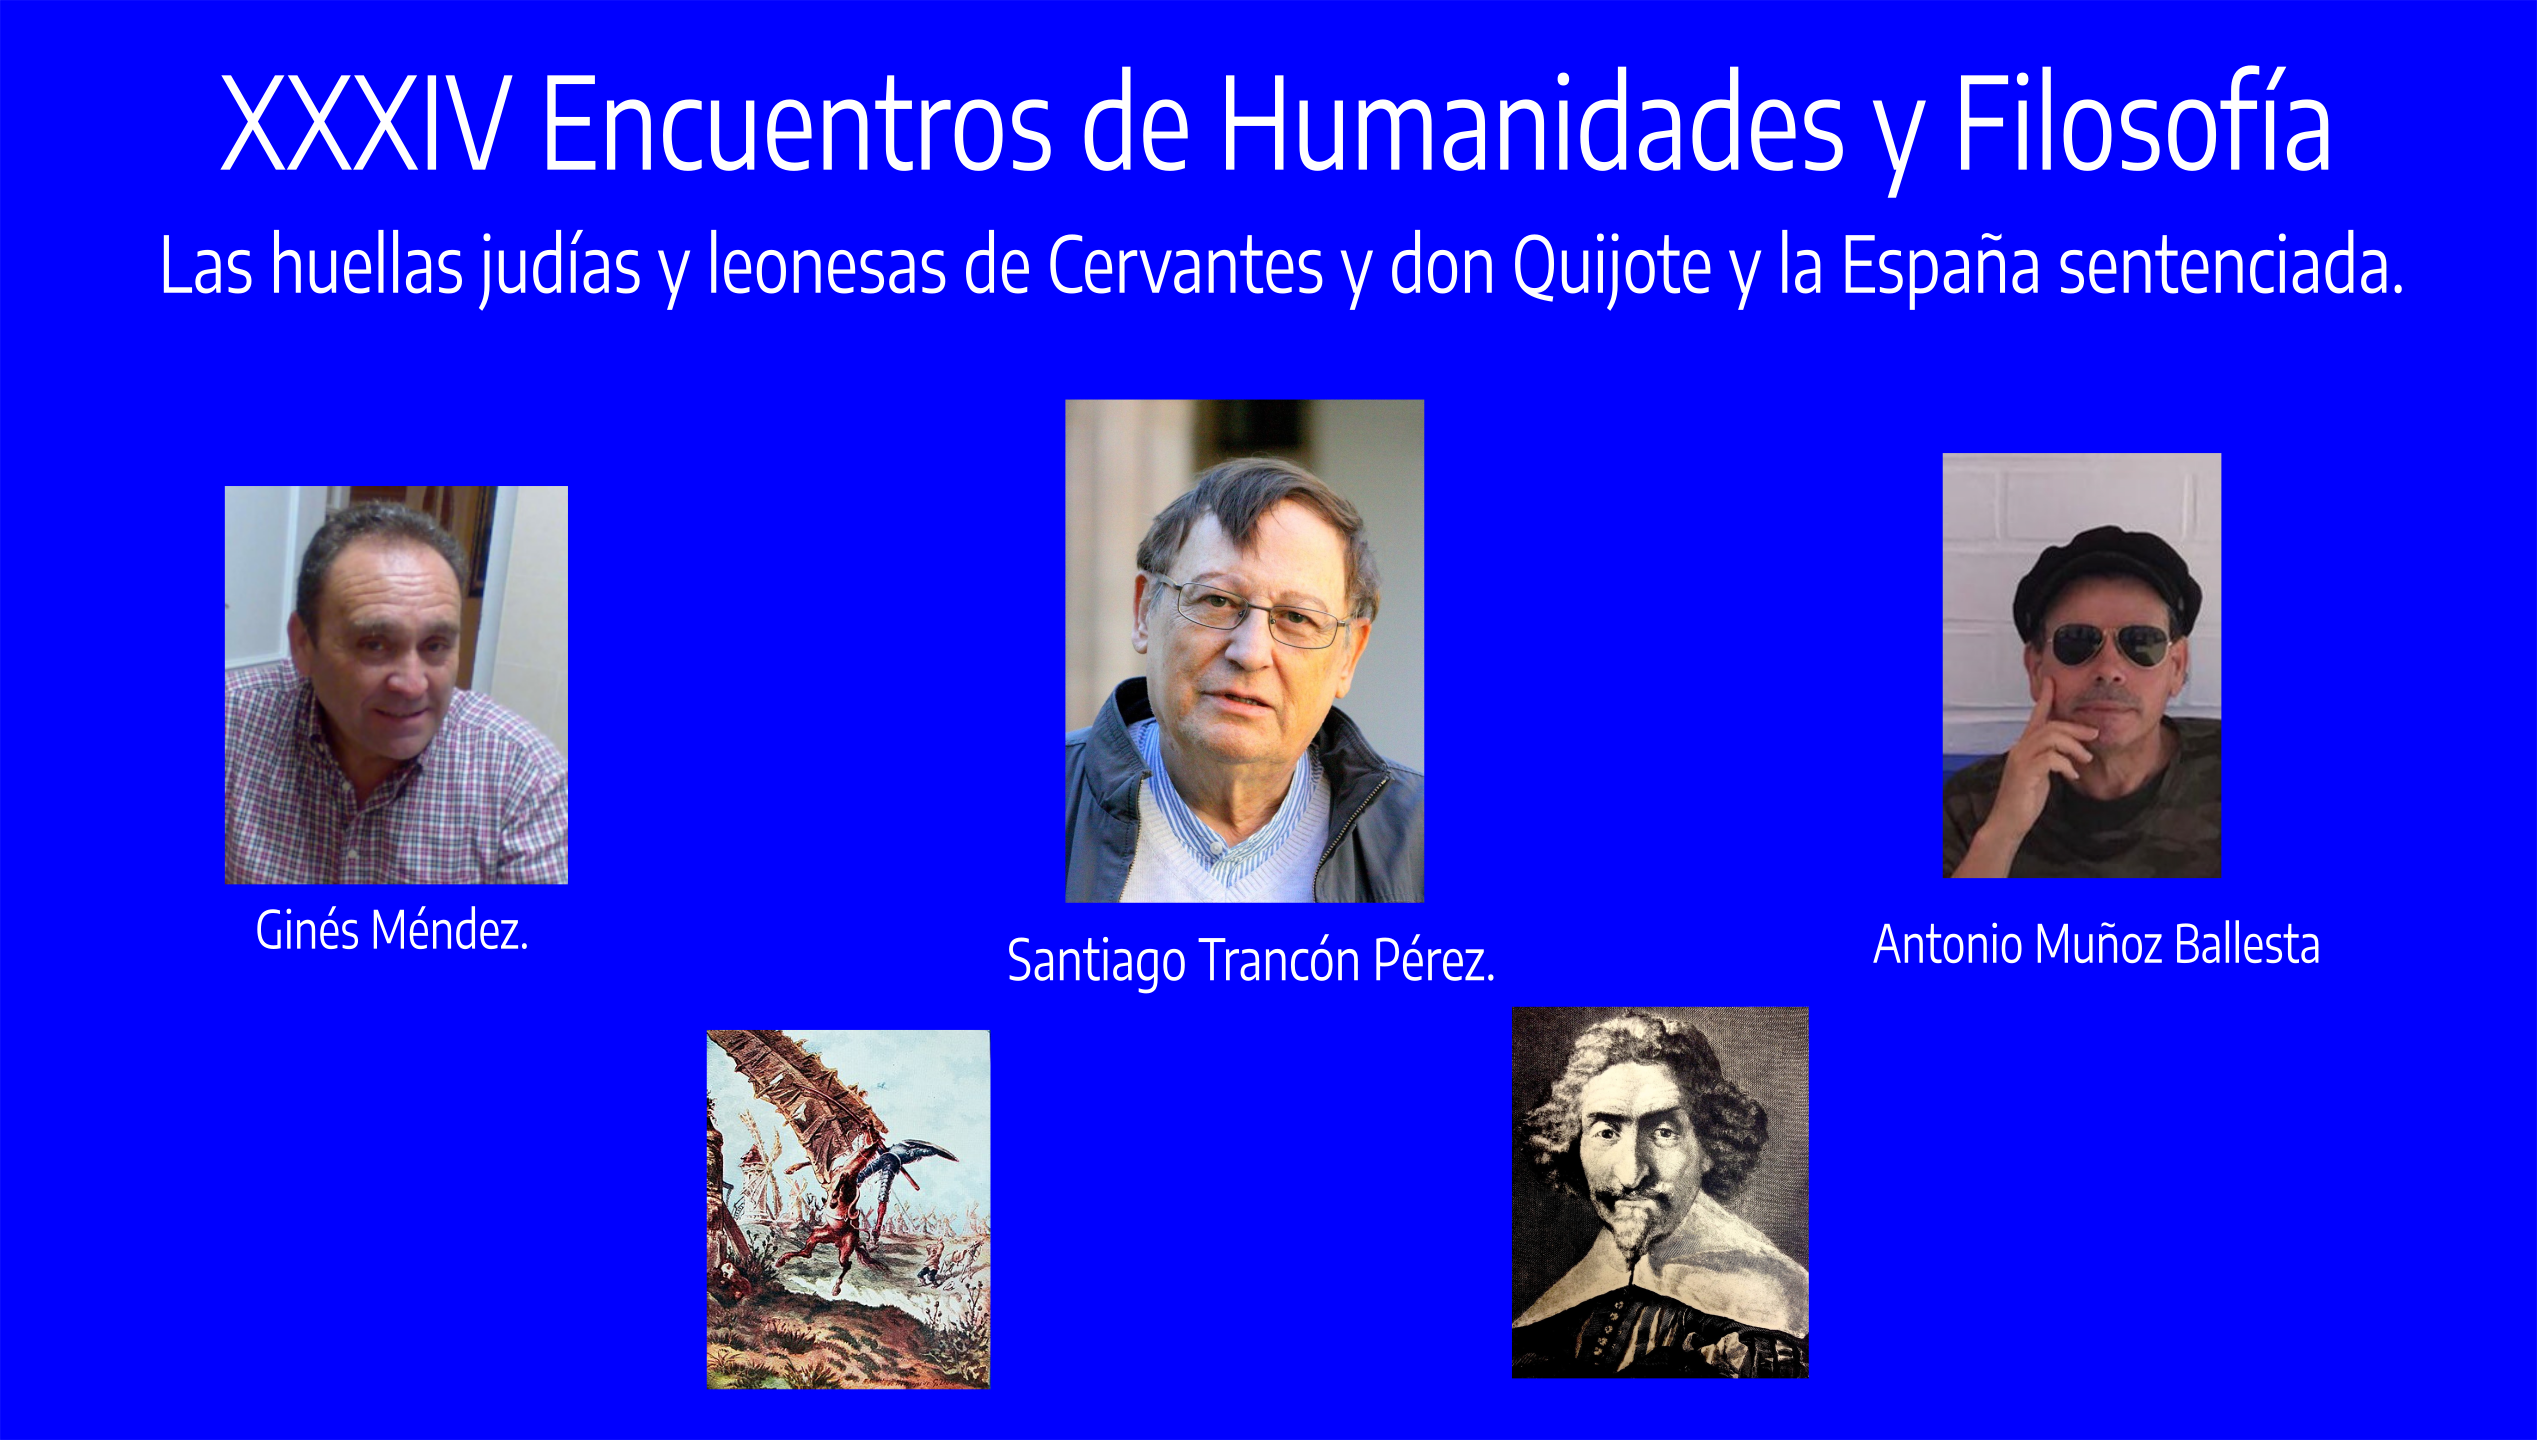 XXXIII Encuentros de Humanidades y Filosfofía,  La Historia del presente: Iberoamérica y España. José Manuel Azcona Pastor.